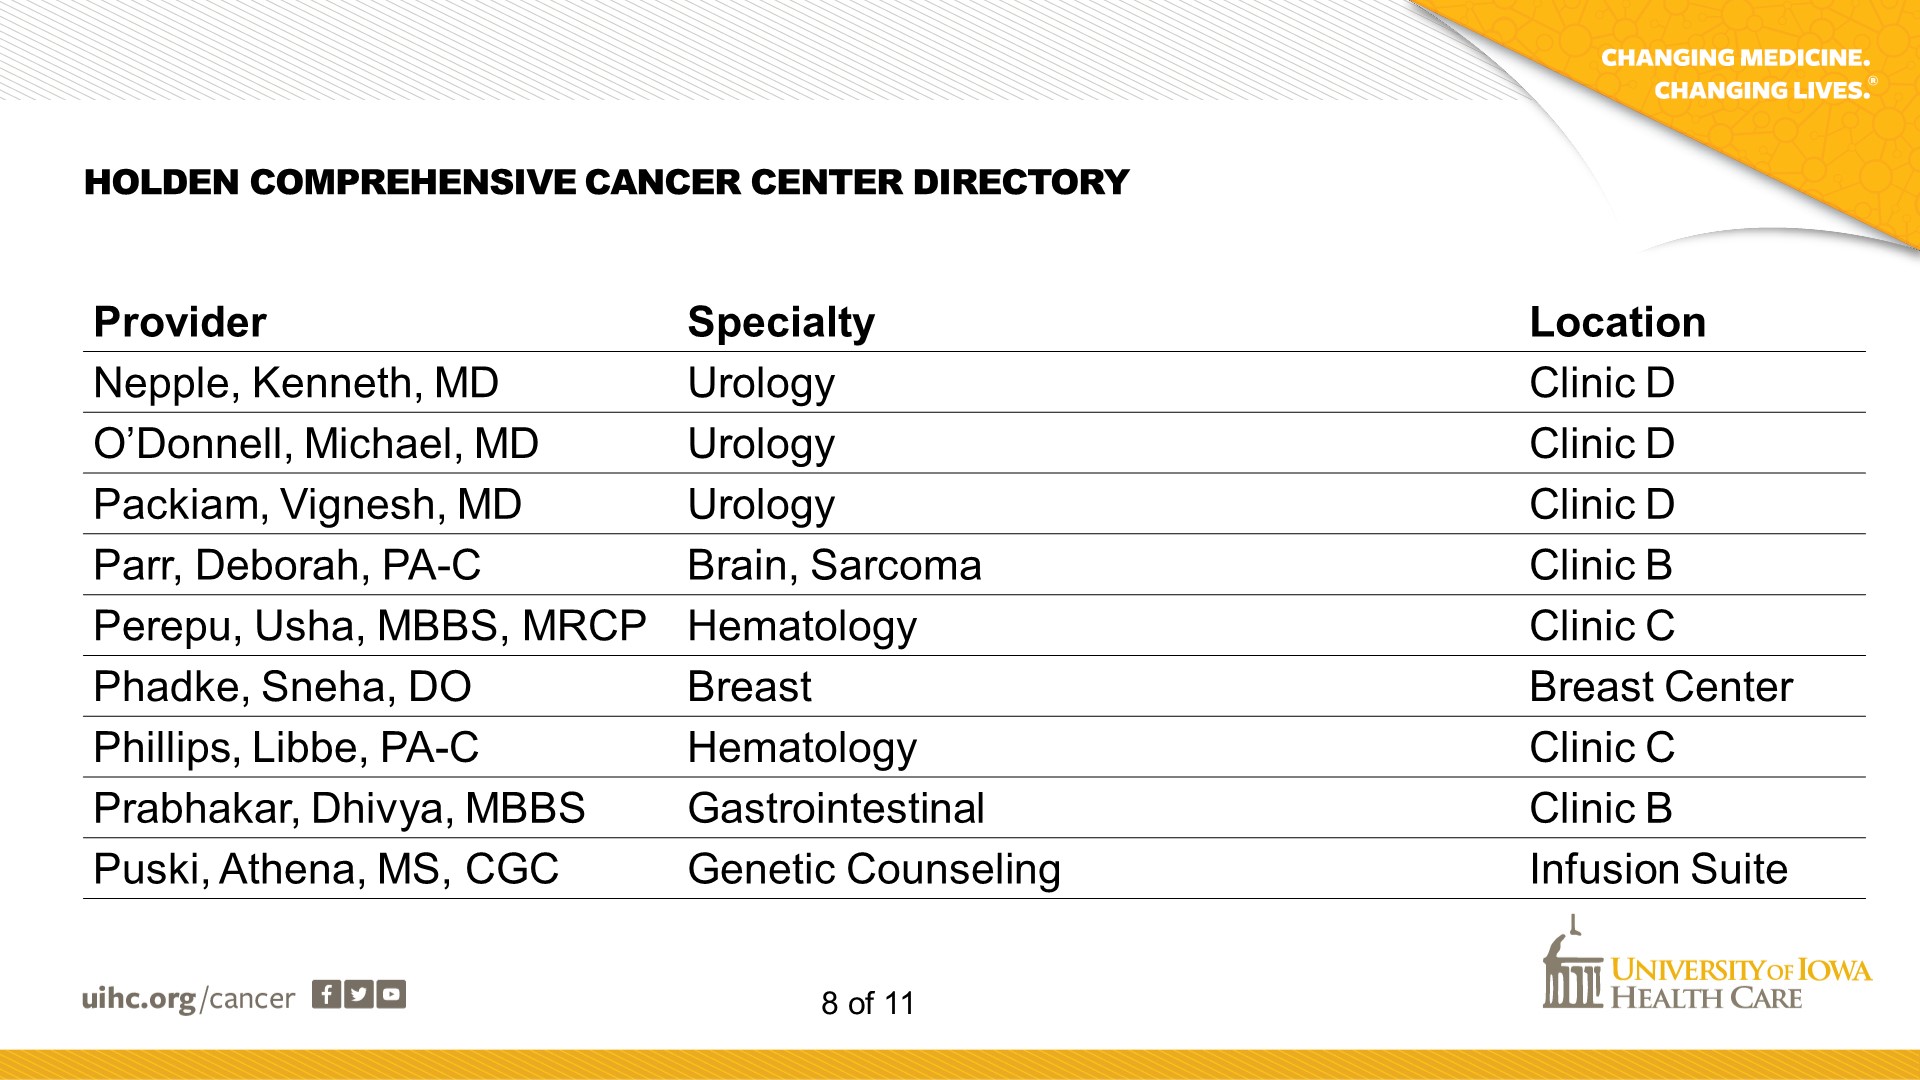 Cancer Center Directory - Slide 8